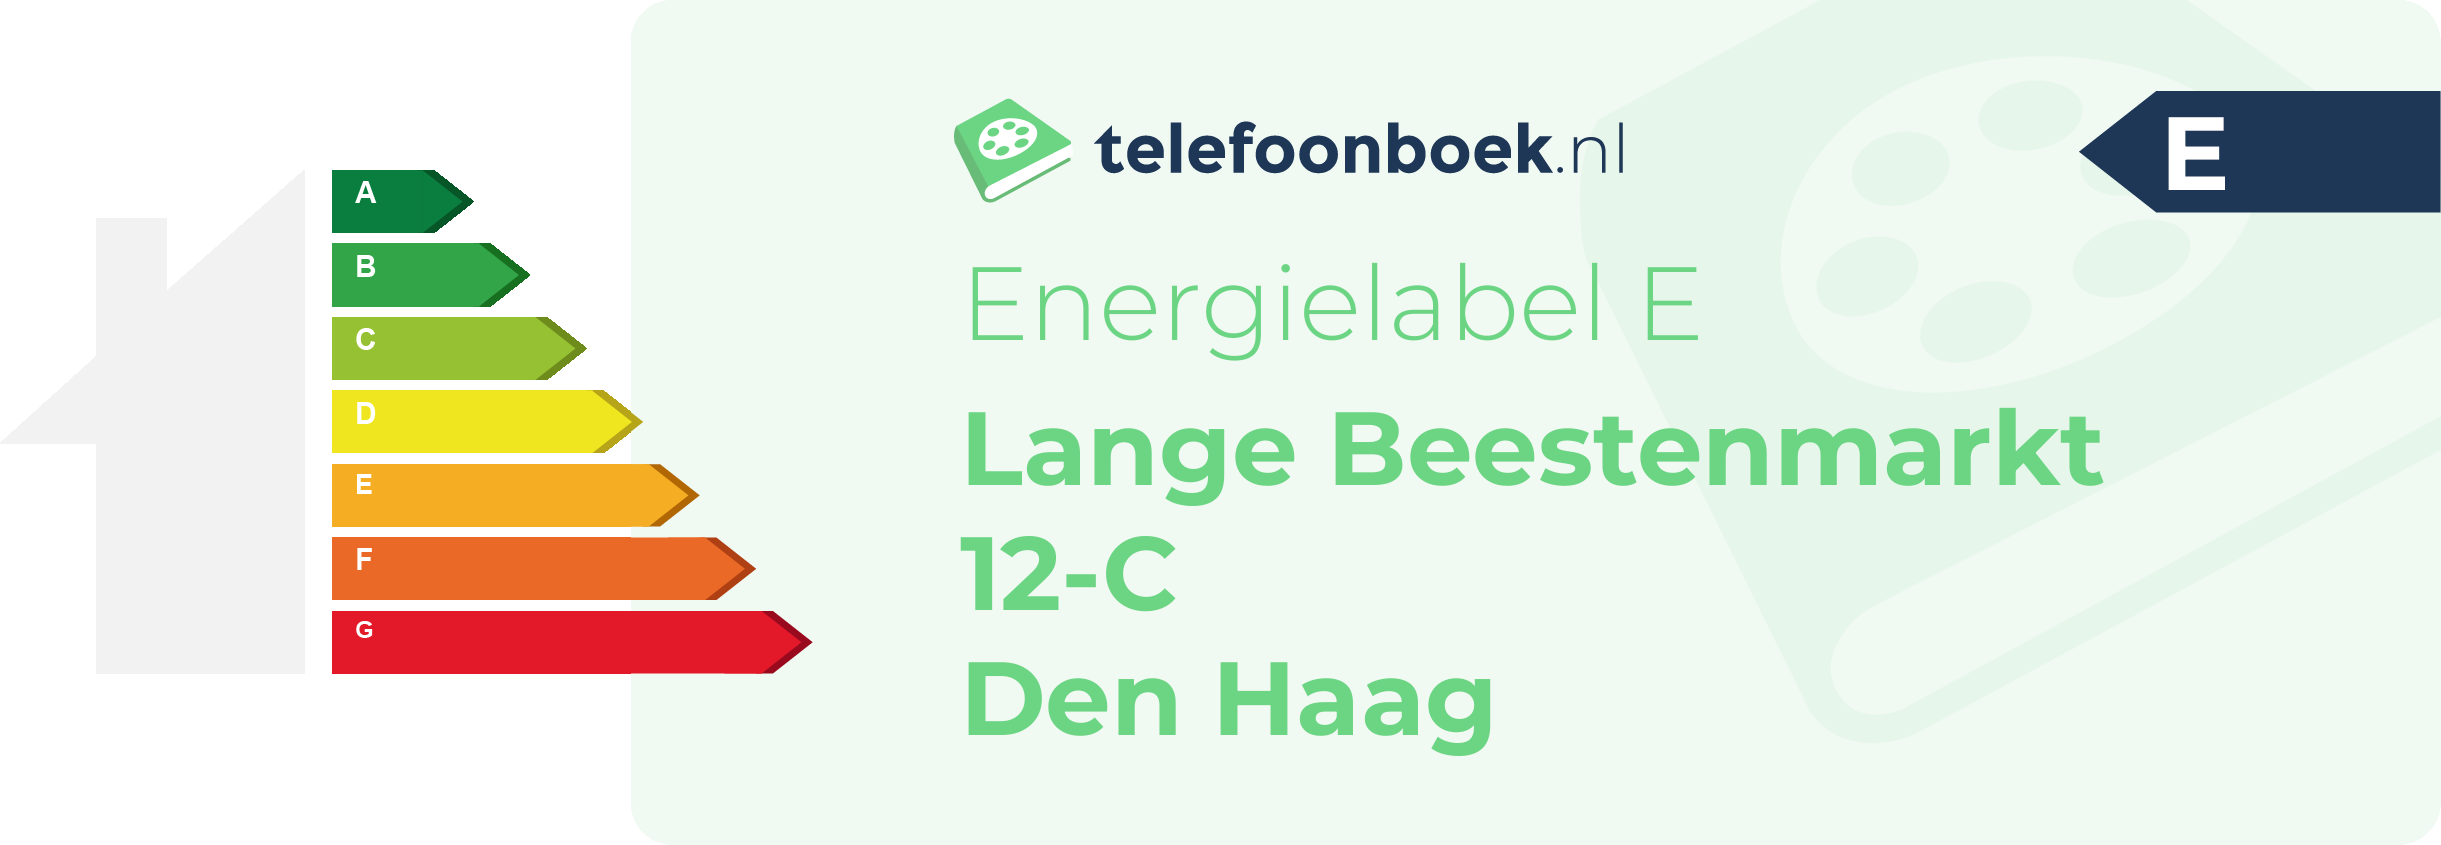 Energielabel Lange Beestenmarkt 12-C Den Haag